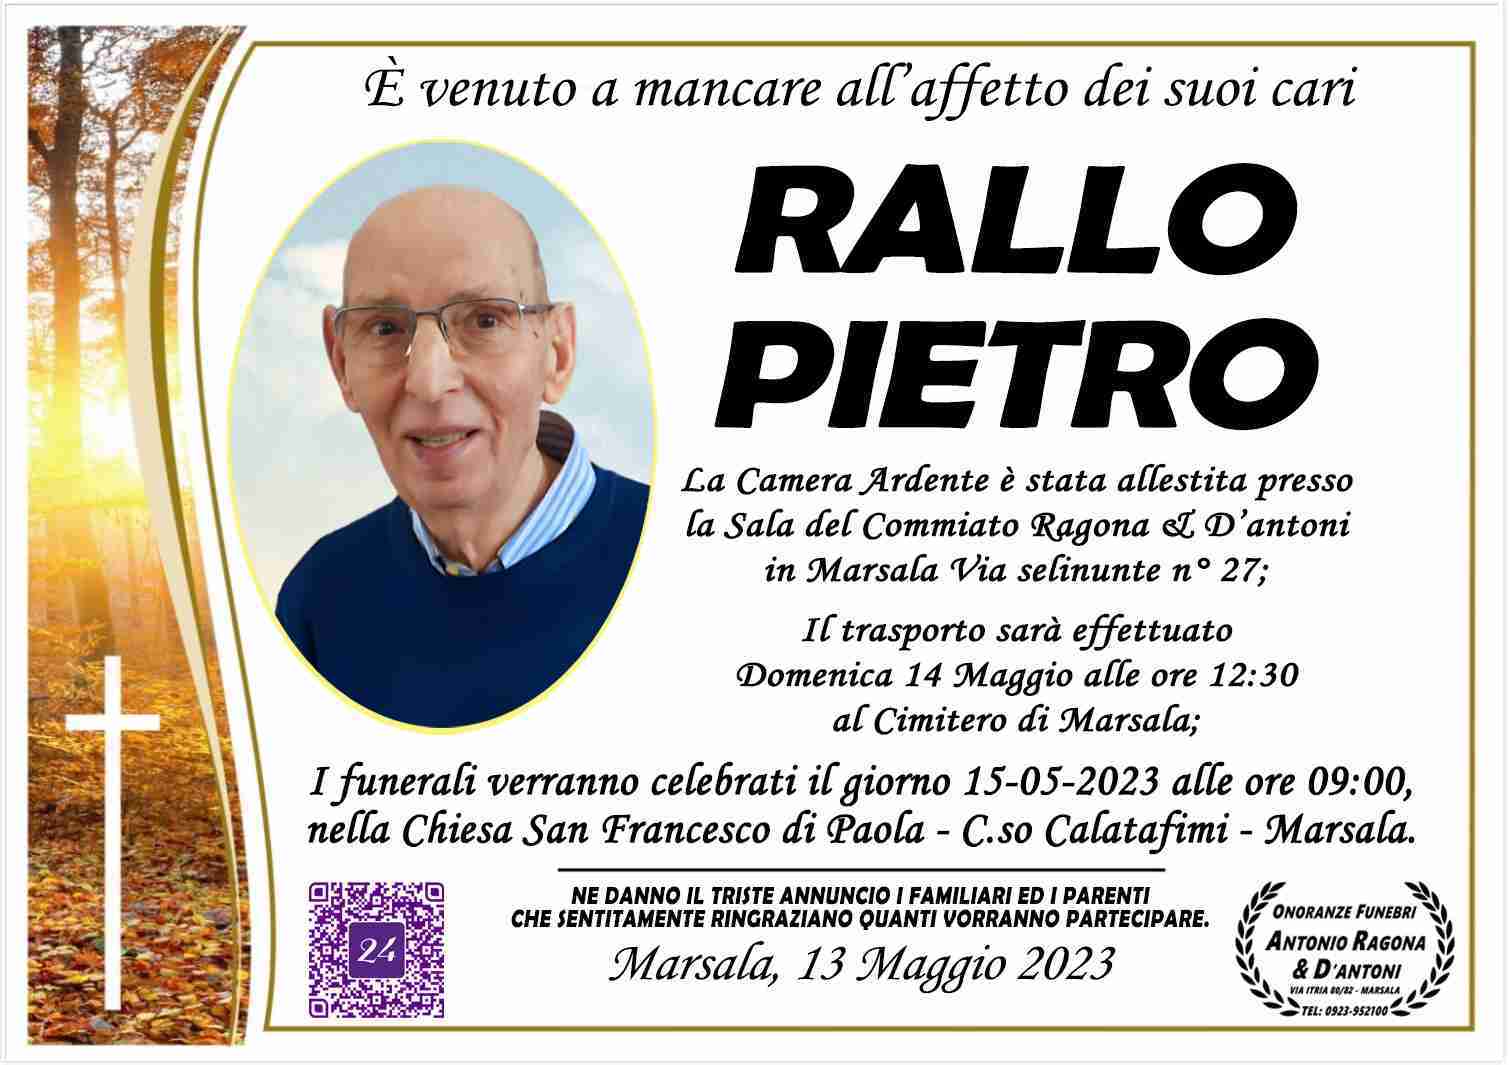 Pietro Rallo